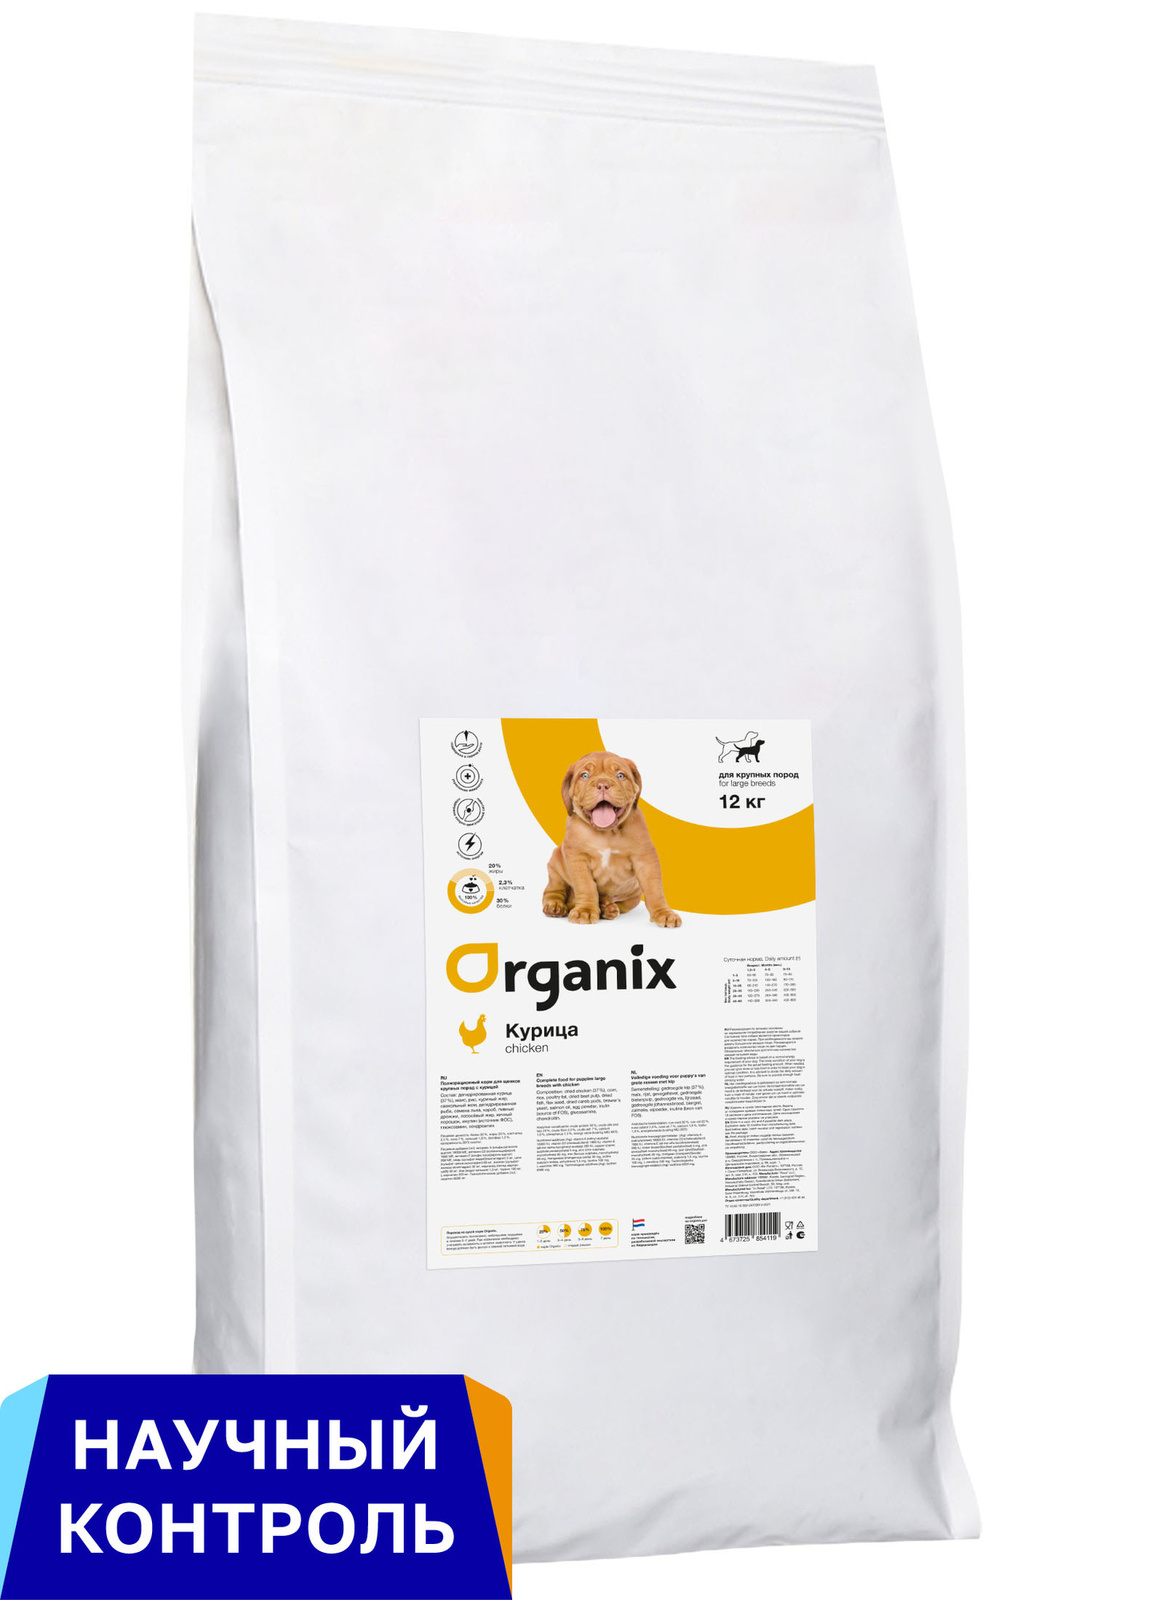 Organix Organix полнорационный сухой корм для щенков крупных пород с курицей для здорового роста и развития (12 кг)